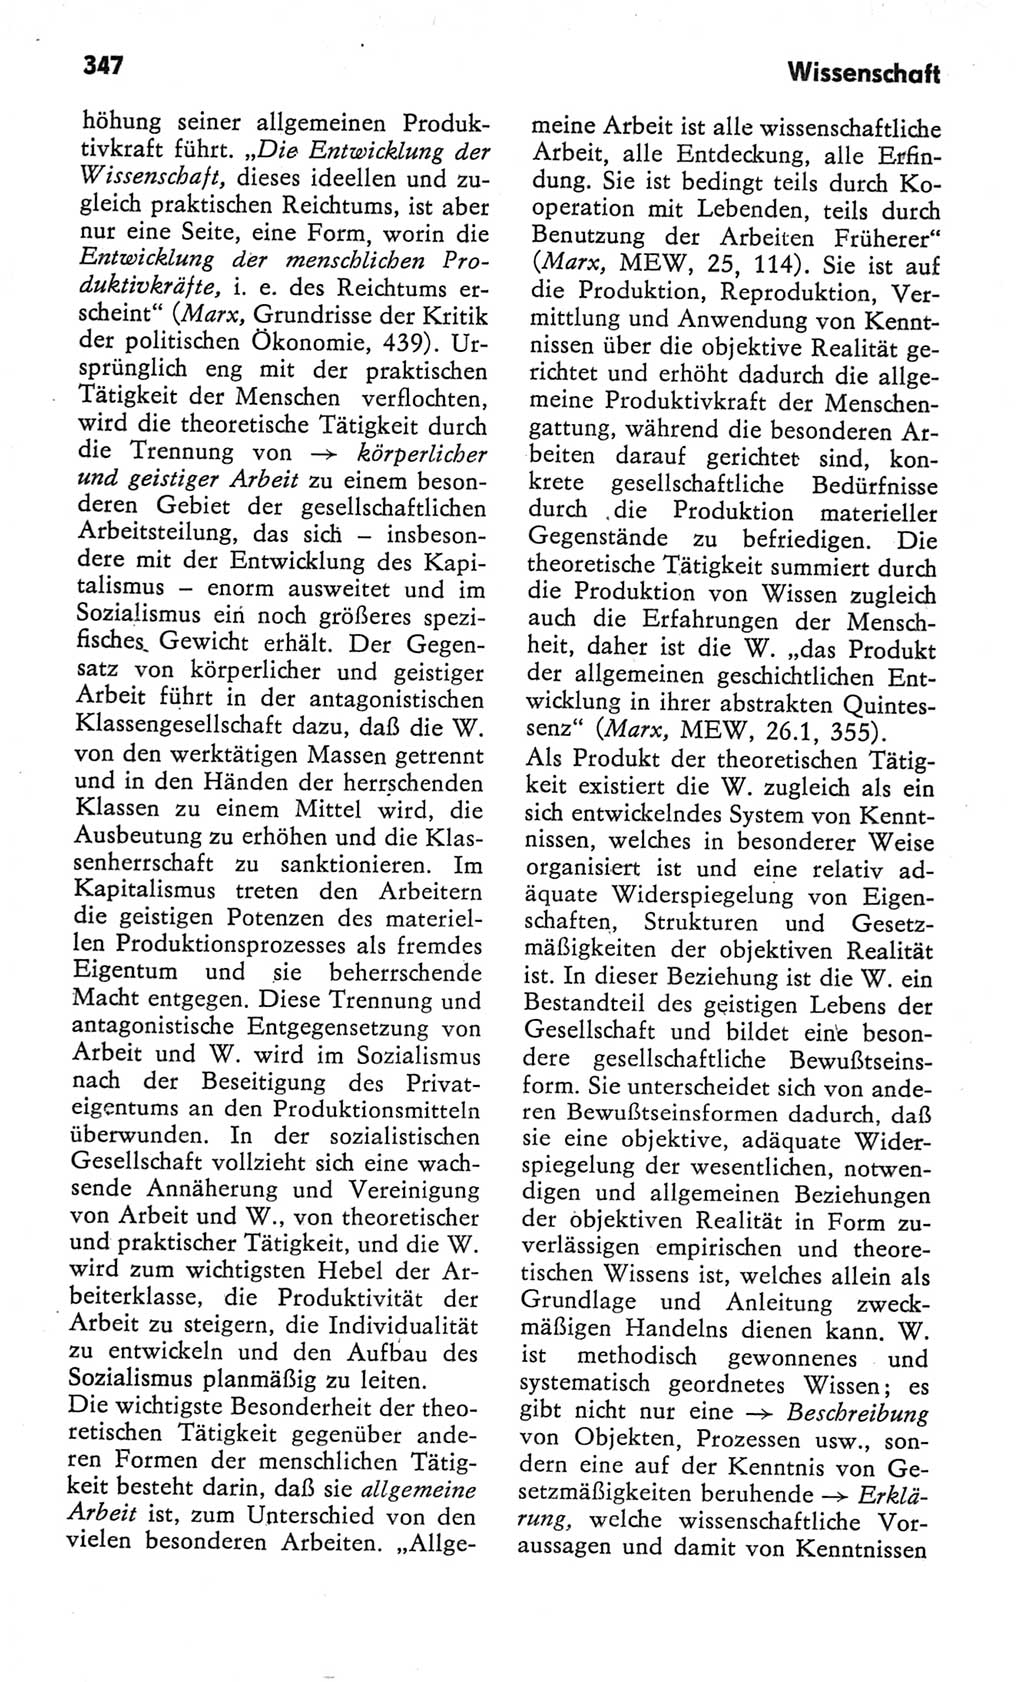 Kleines Wörterbuch der marxistisch-leninistischen Philosophie [Deutsche Demokratische Republik (DDR)] 1982, Seite 347 (Kl. Wb. ML Phil. DDR 1982, S. 347)